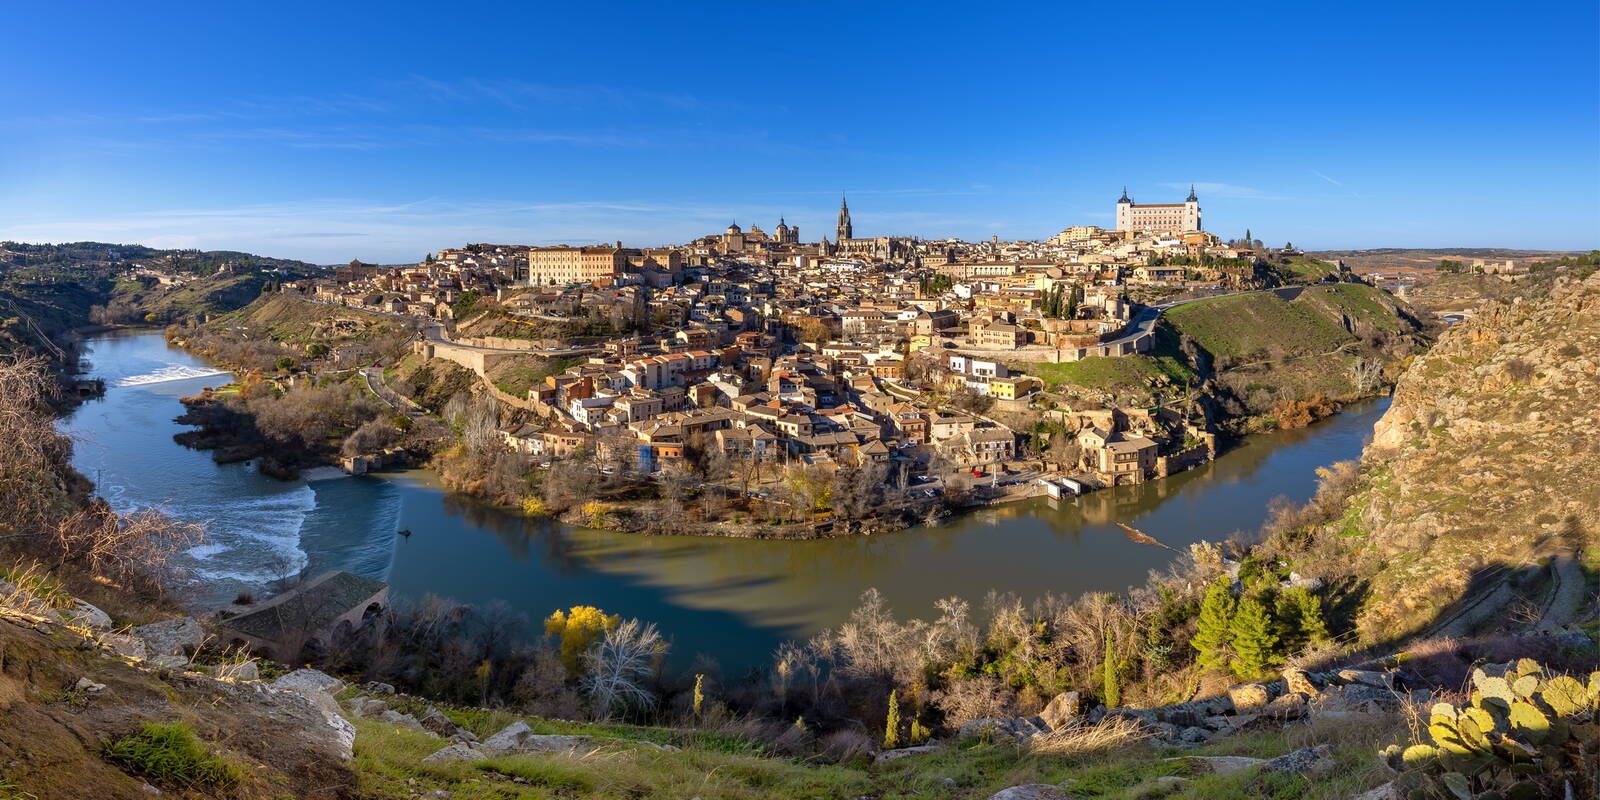 Image of Mirador Toledo (Toledo Viewpoint) by Adelheid Smitt